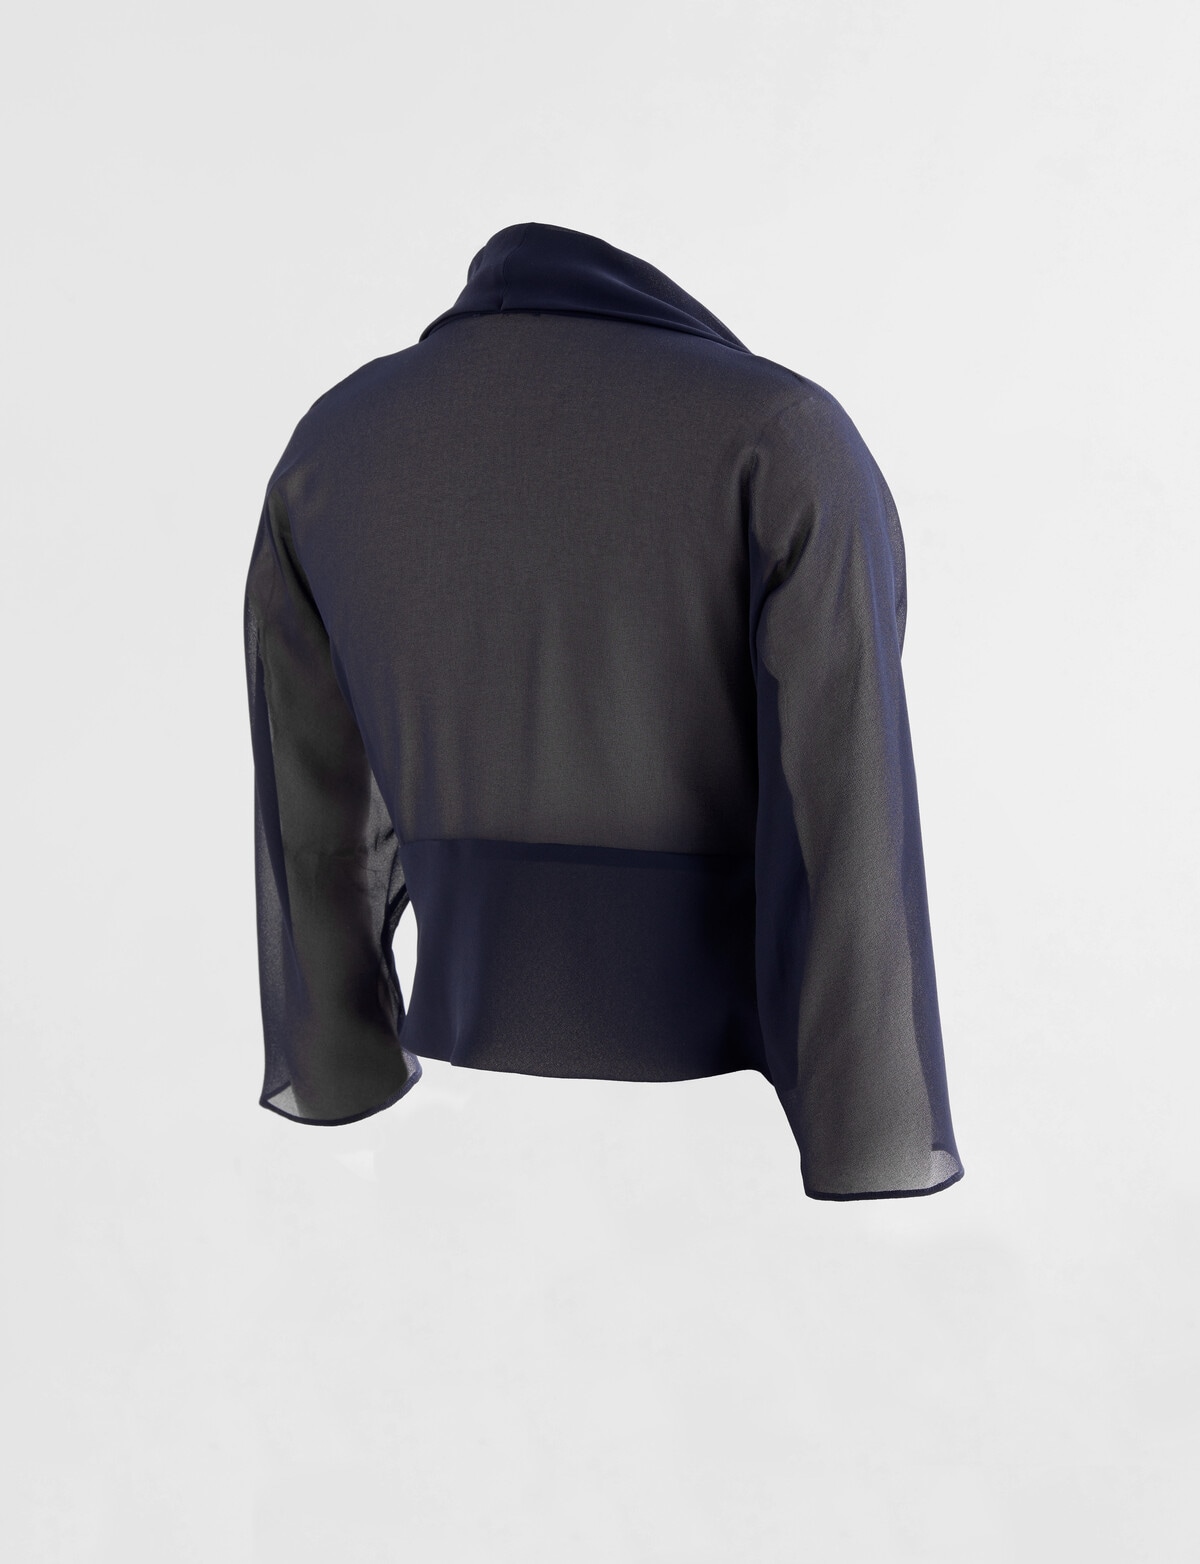 Whistle 3/4 Sleeve Bolero, Navy - Coats & Jackets